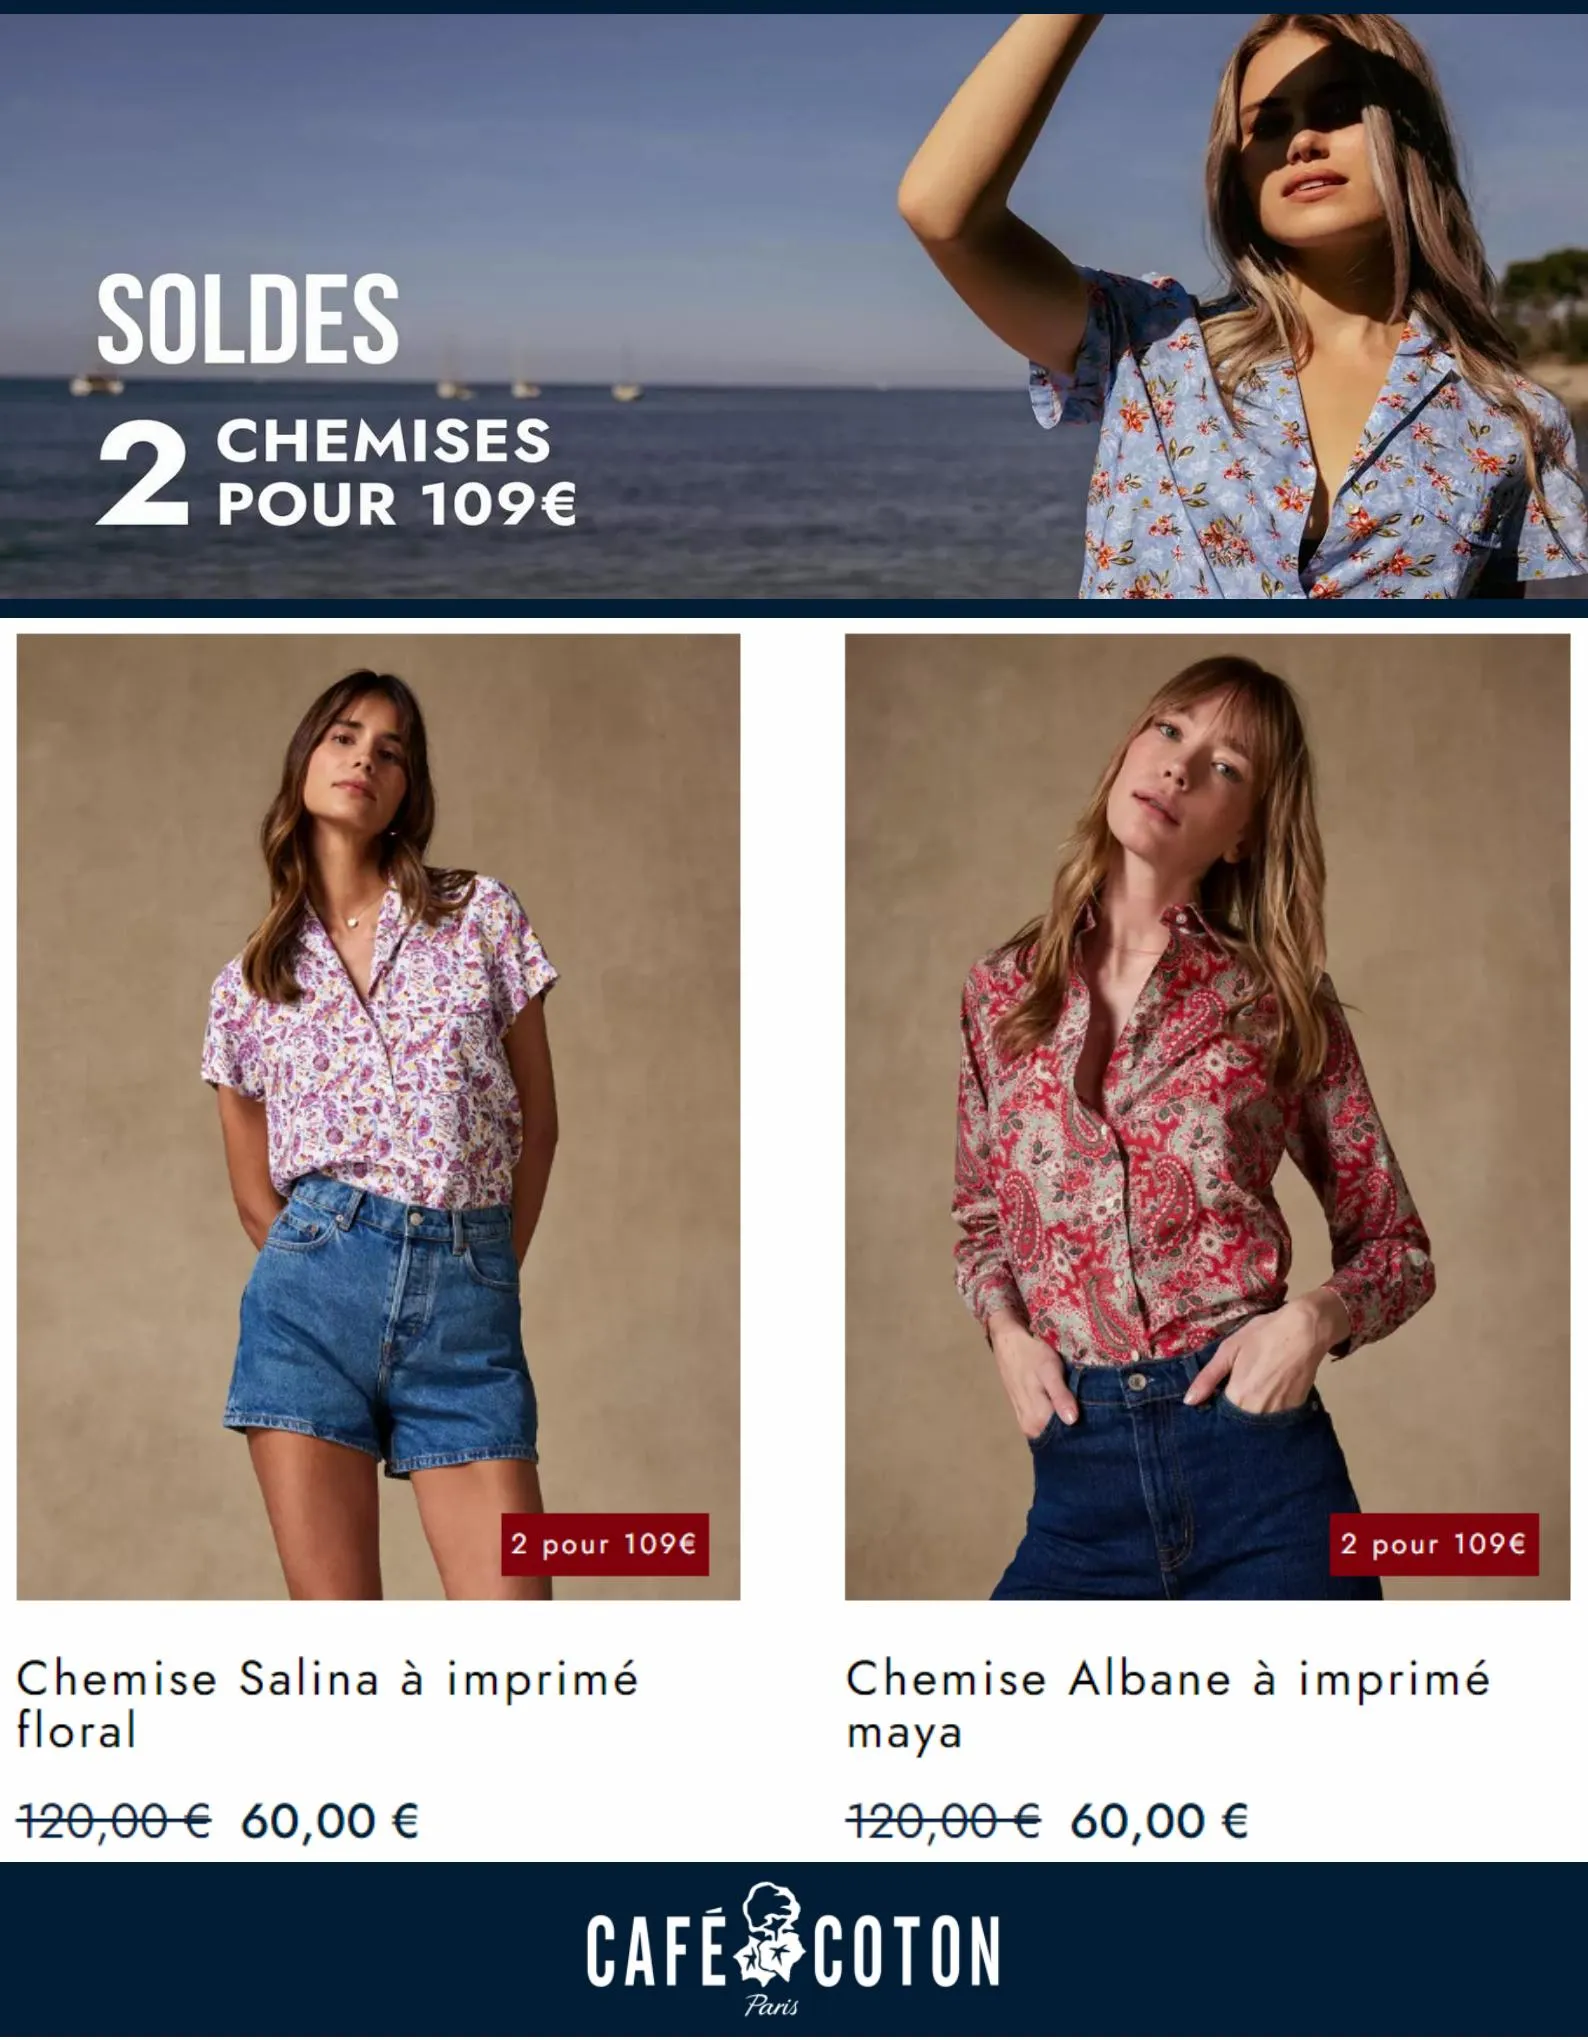 Catalogue Soldes 2 Chemises pour 109€, page 00003